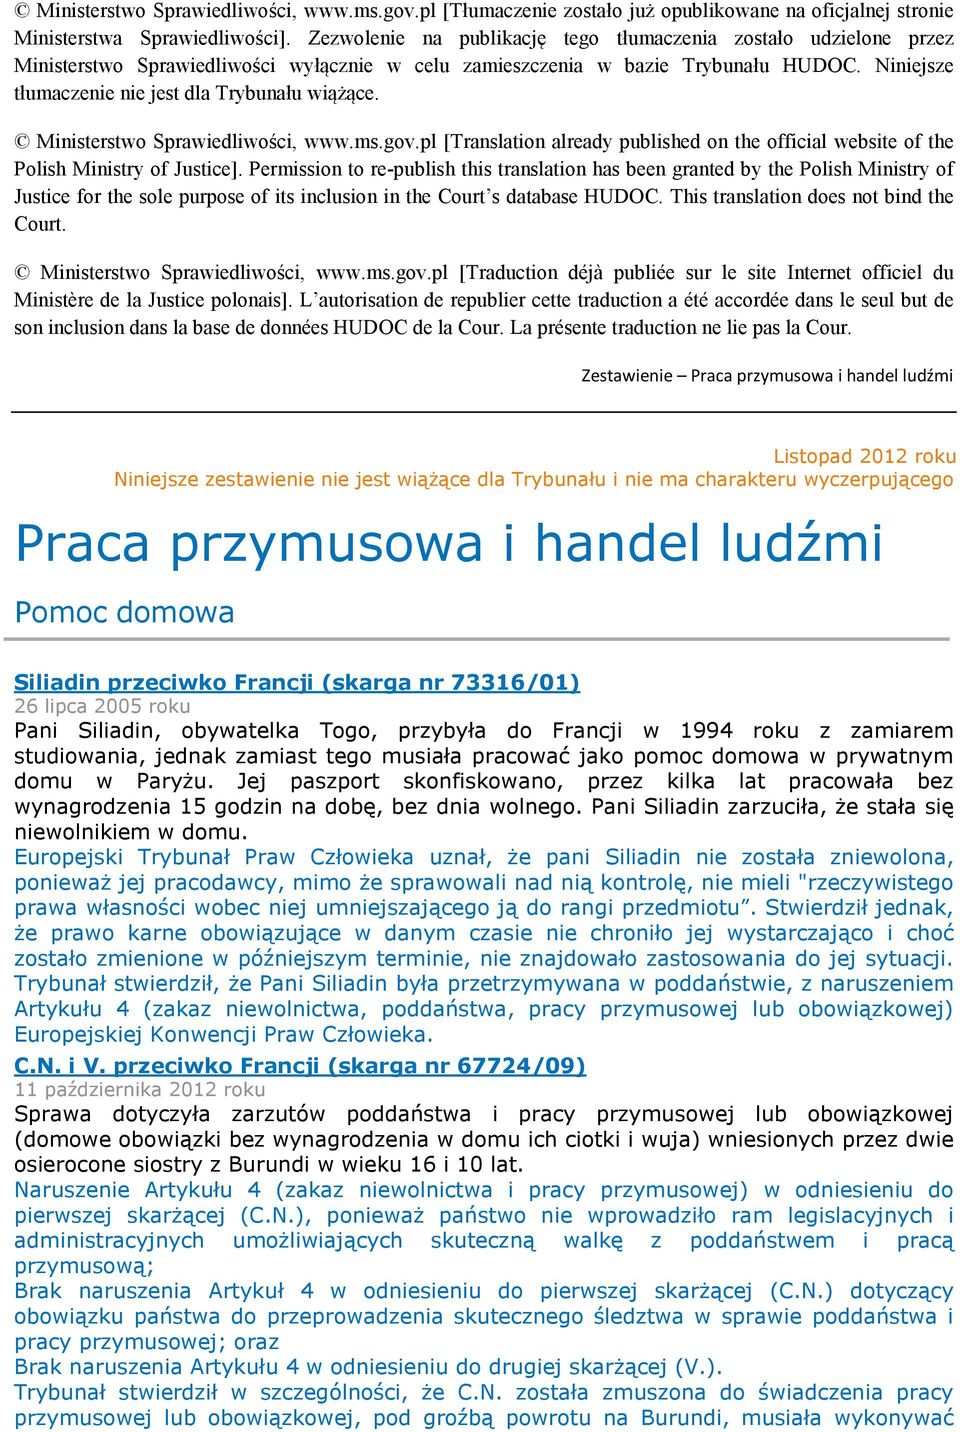 Niniejsze tłumaczenie nie jest dla Trybunału wiążące. Ministerstwo Sprawiedliwości, www.ms.gov.pl [Translation already published on the official website of the Polish Ministry of Justice].